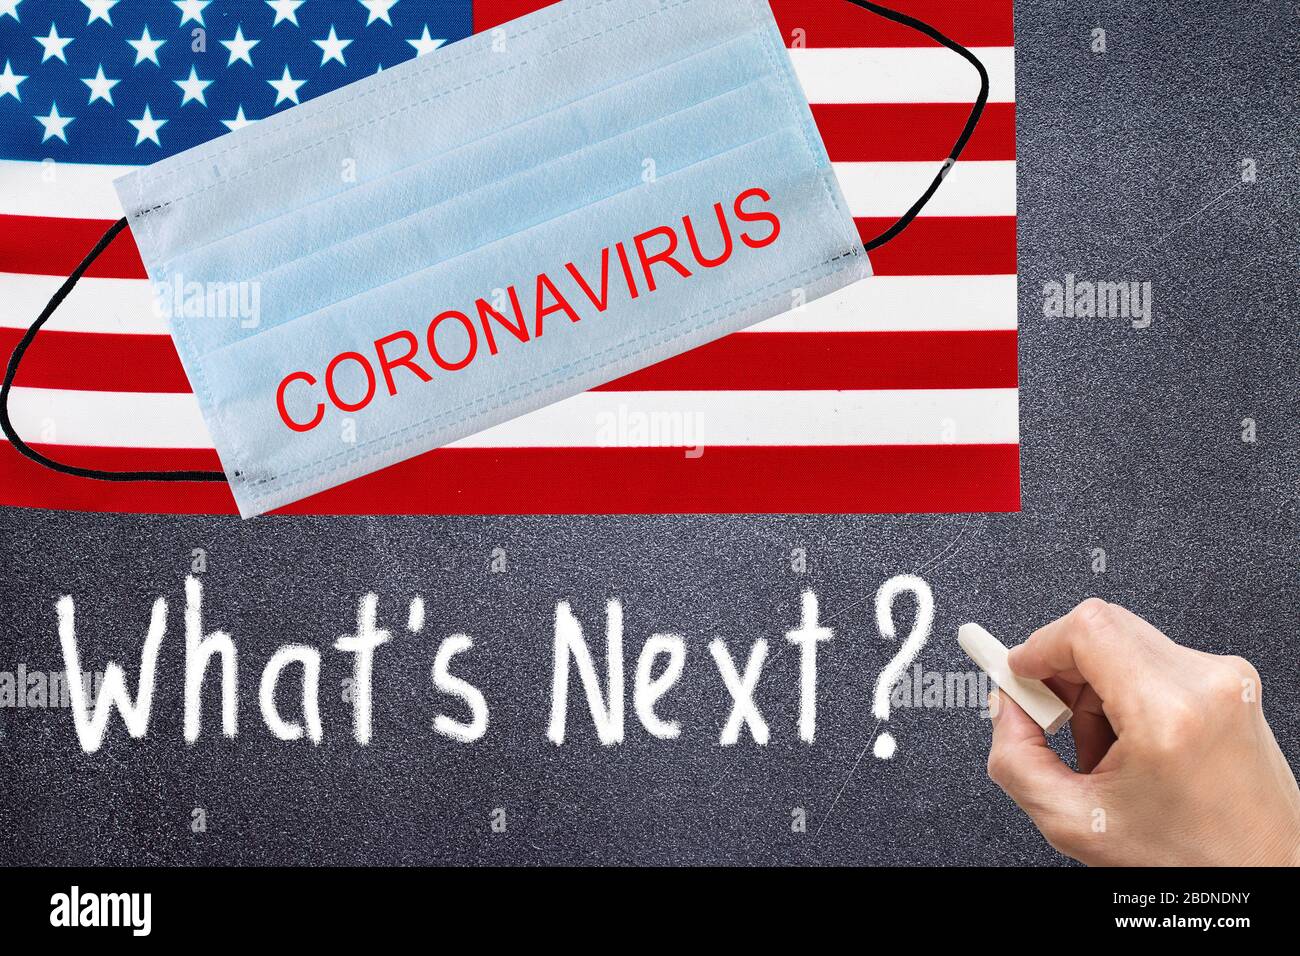 Drapeau des Etats-Unis avec masque jetable et inscription DE CORONAVIRUS. Épidémie de coronavirus COVID-19 aux États-Unis d'Amérique. Coronavirus COVID-19 mondial Banque D'Images